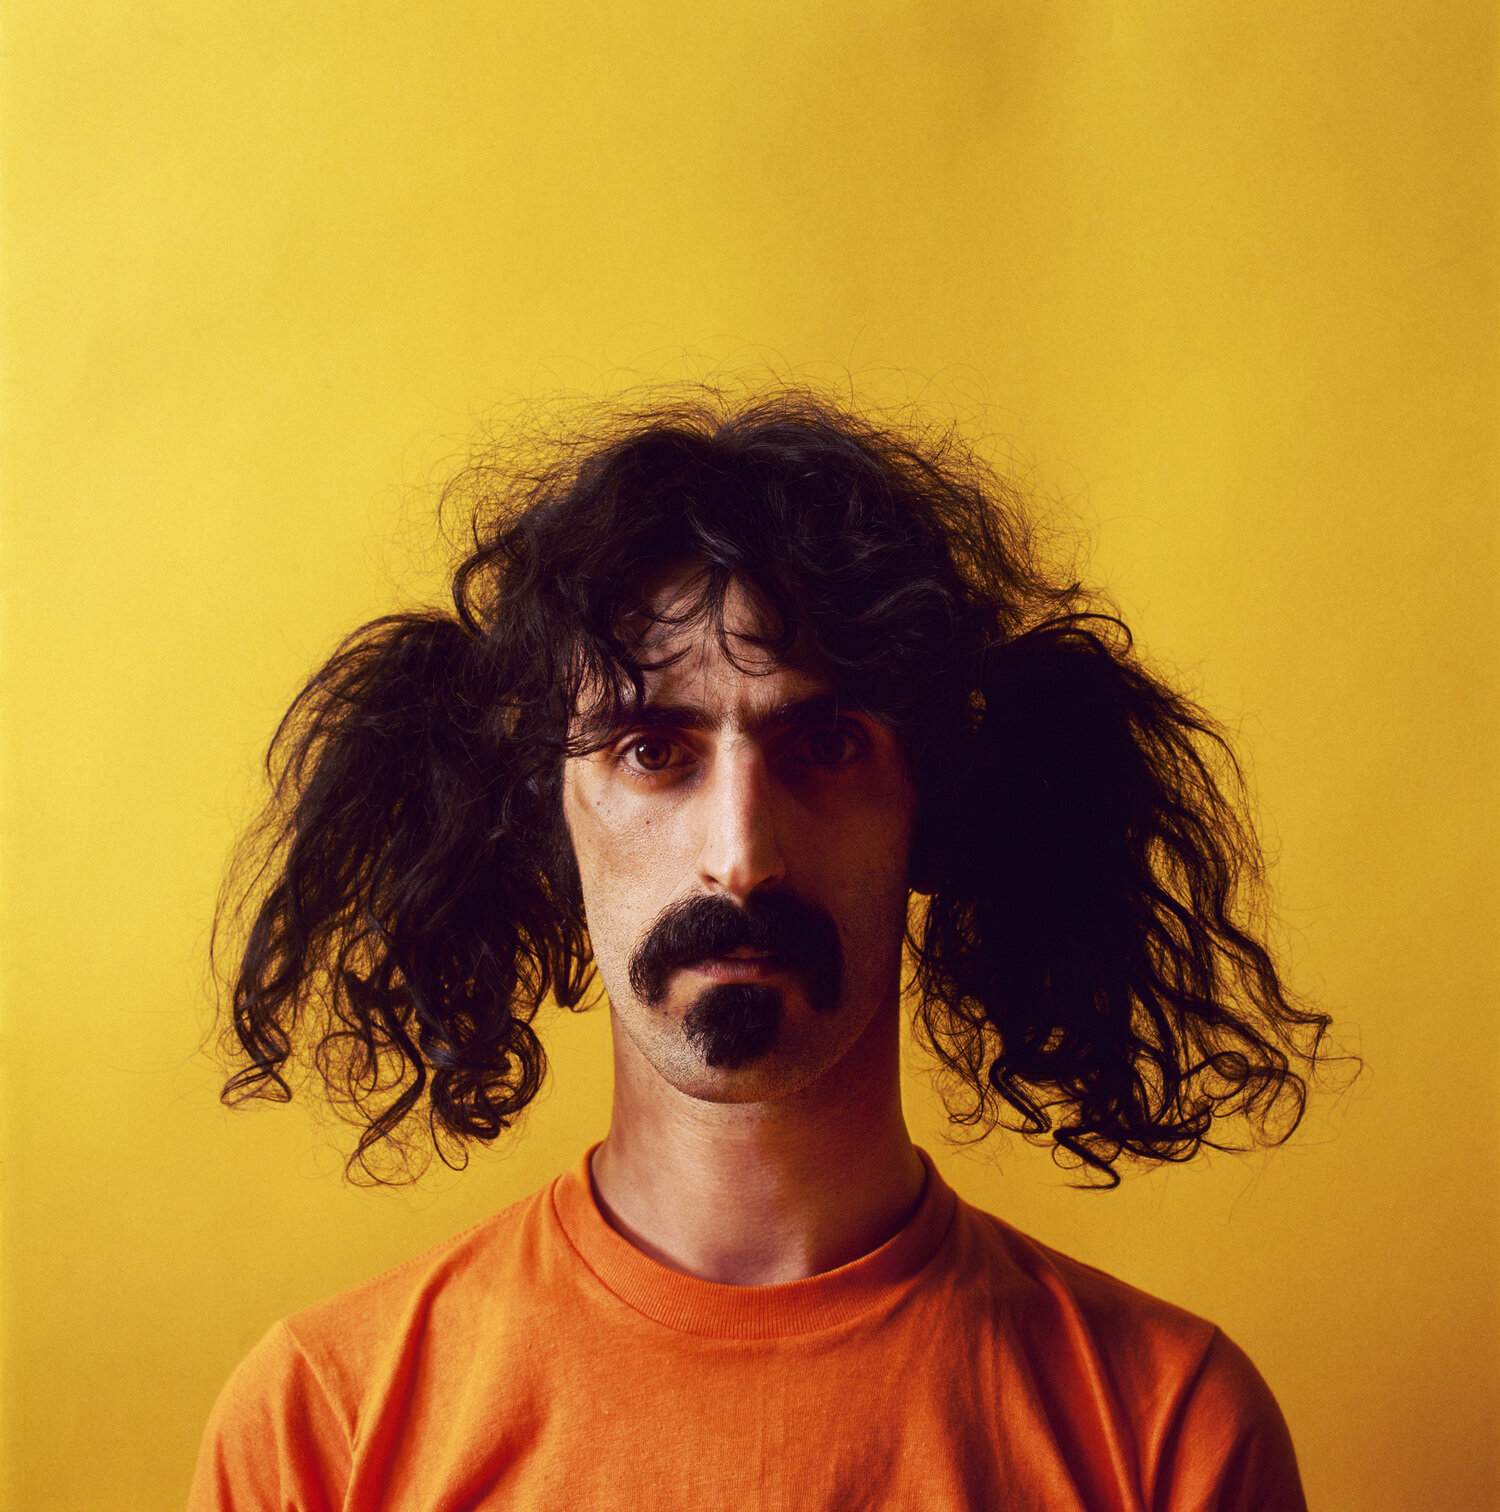 Frank Zappa, 1967. Photo by Jerry Schatzberg.